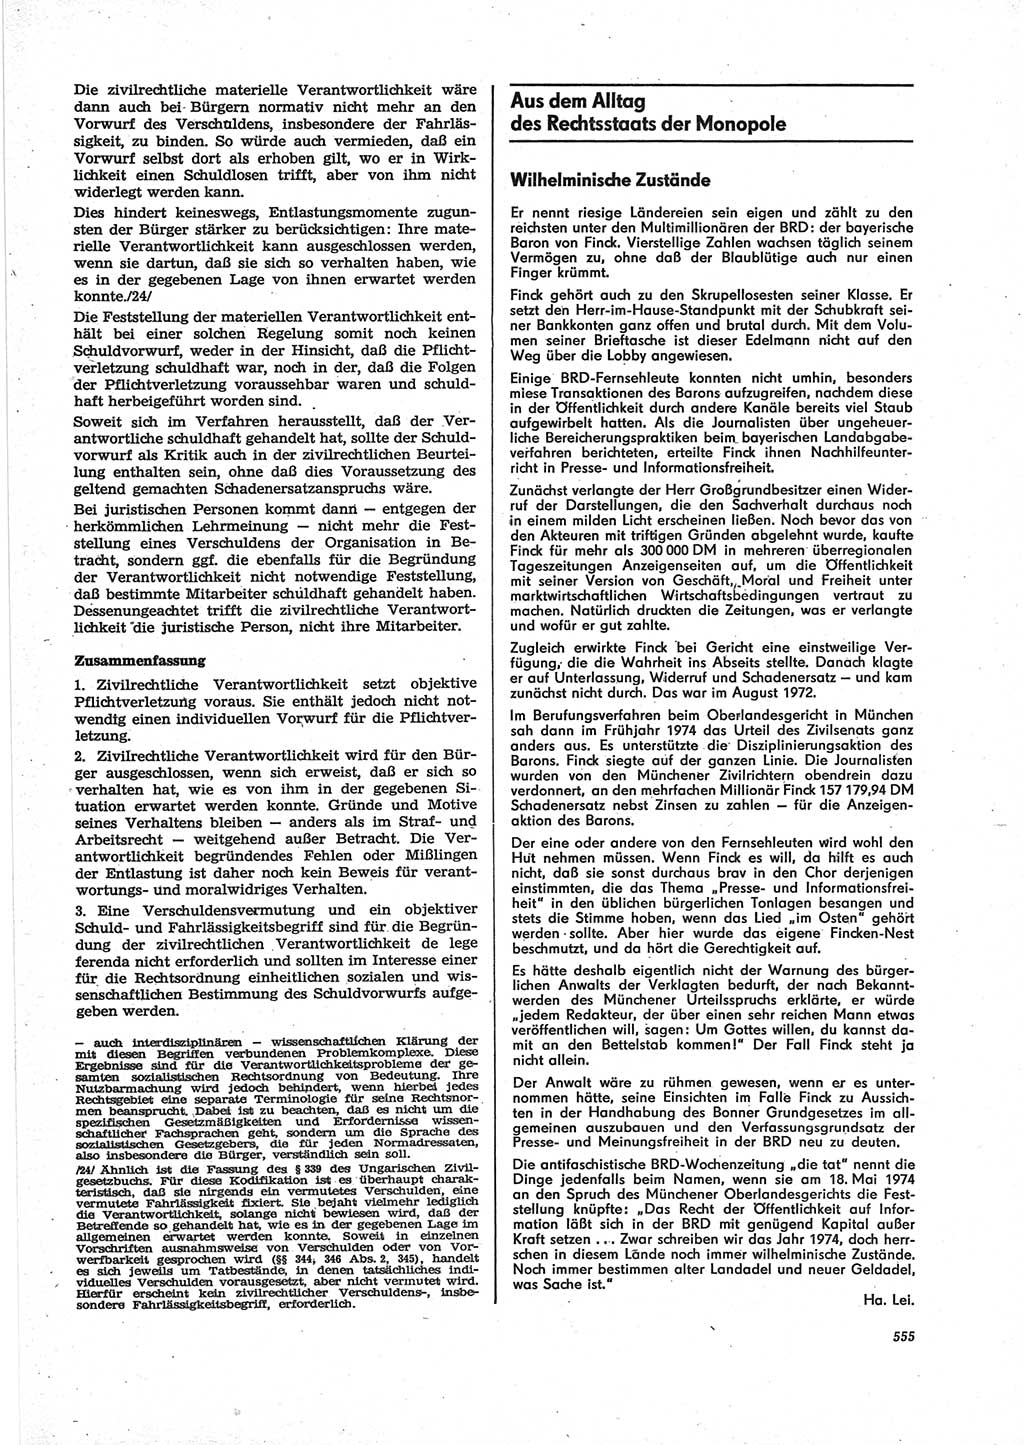 Neue Justiz (NJ), Zeitschrift für Recht und Rechtswissenschaft [Deutsche Demokratische Republik (DDR)], 28. Jahrgang 1974, Seite 555 (NJ DDR 1974, S. 555)